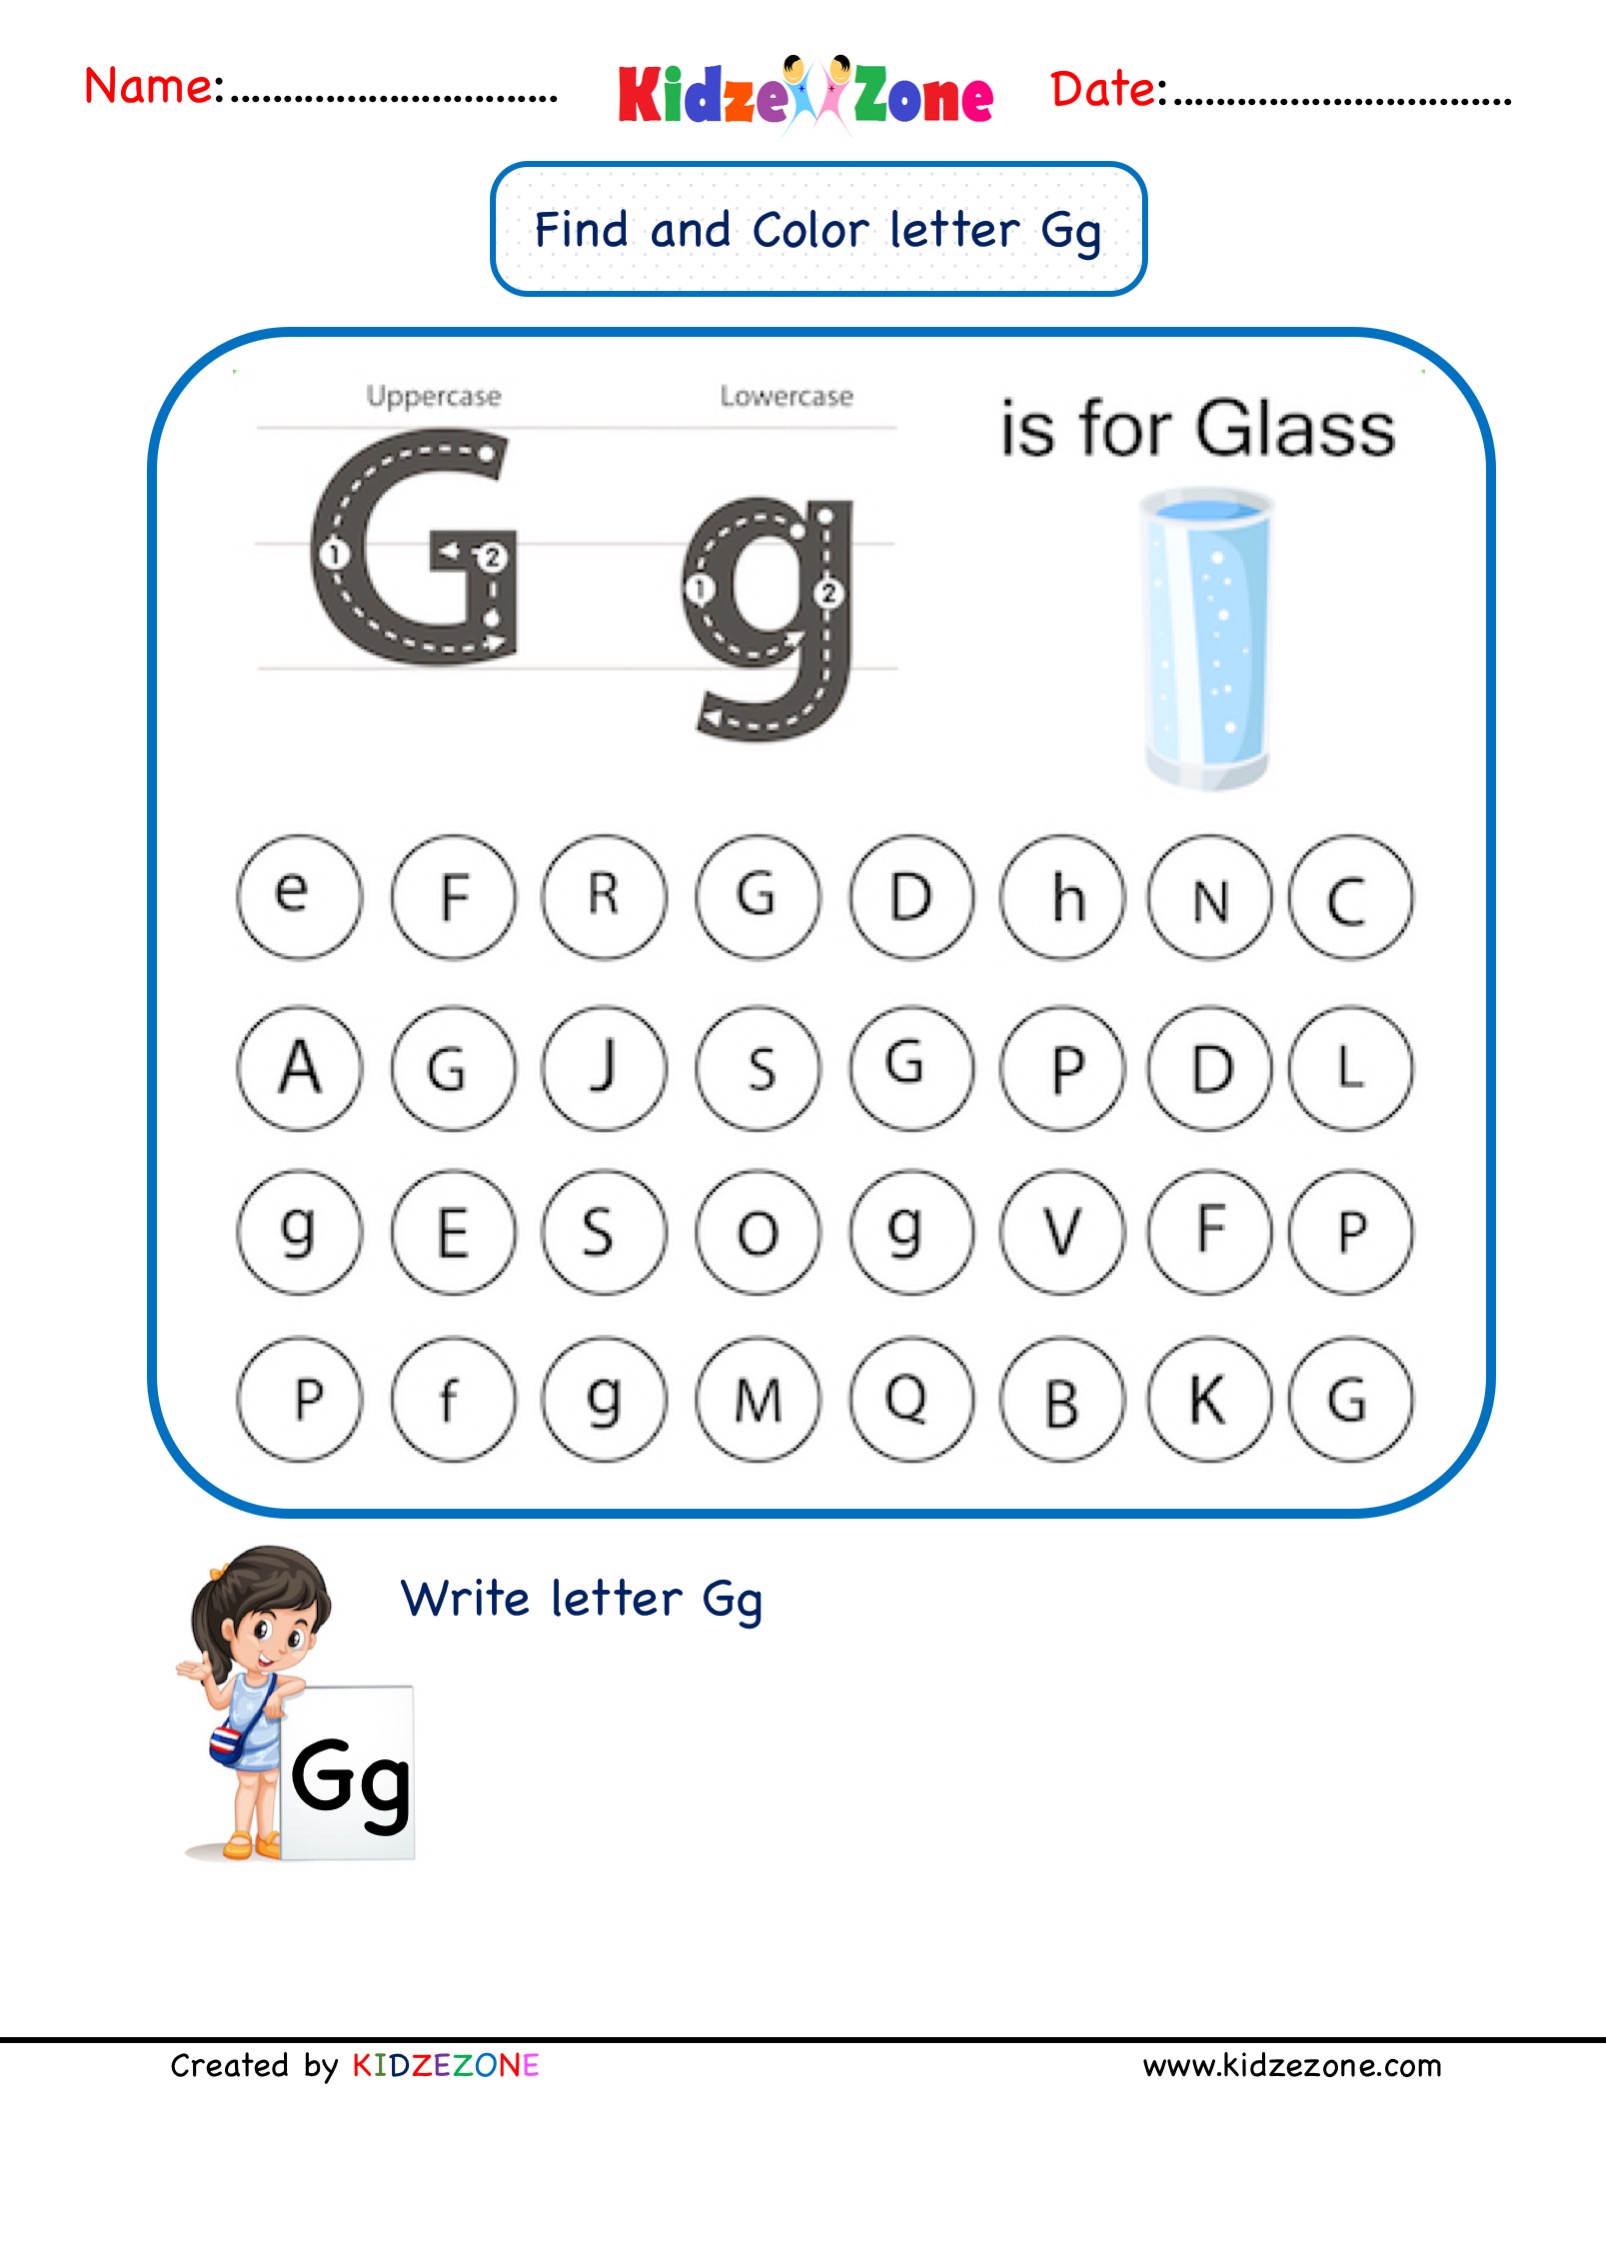 letter g worksheets